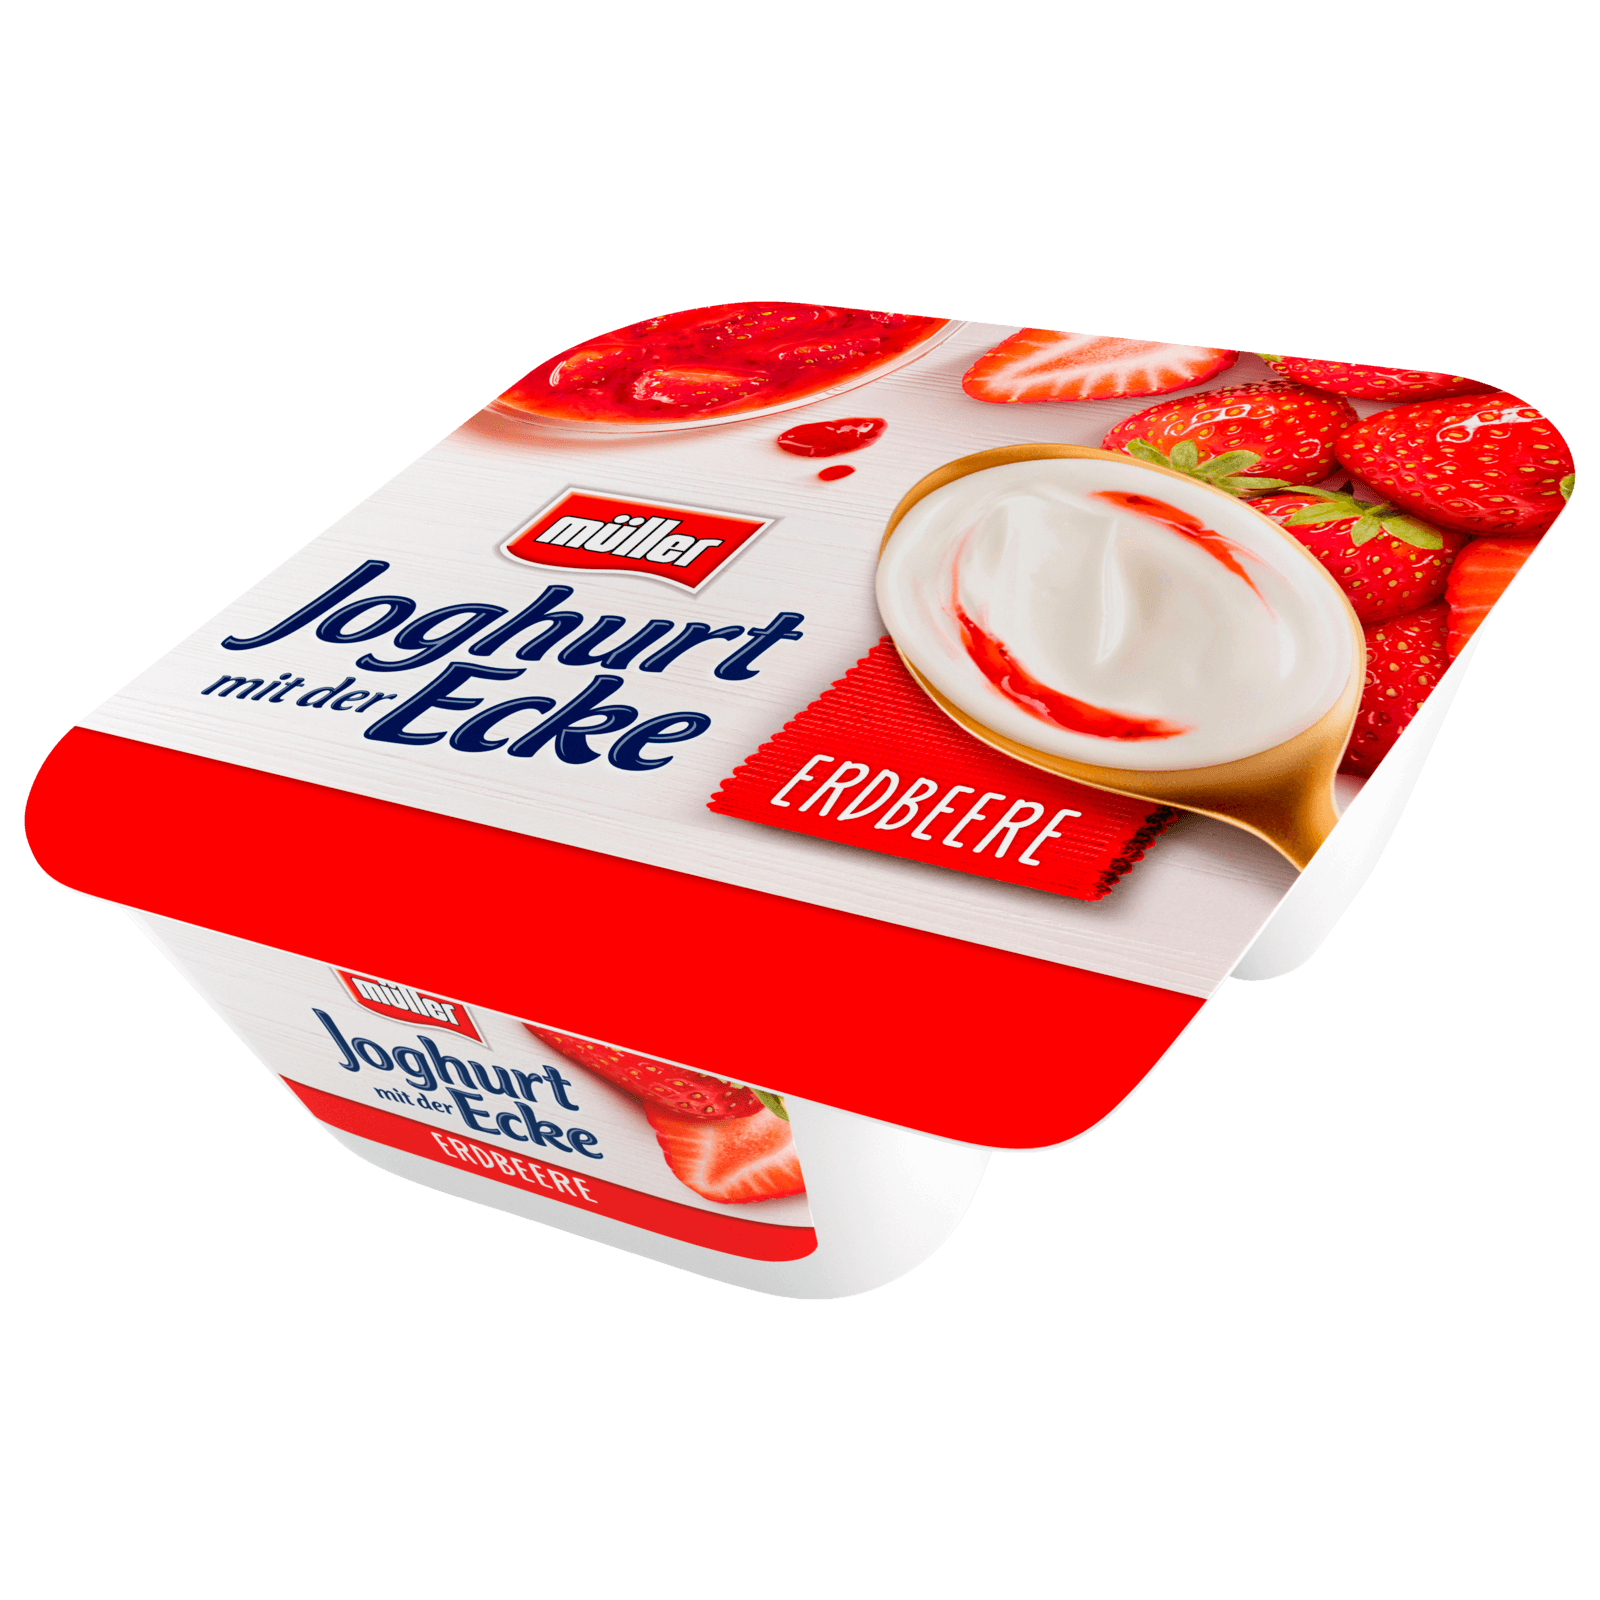 Müller Joghurt mit der Ecke Erdbeere 150g bei REWE online bestellen!